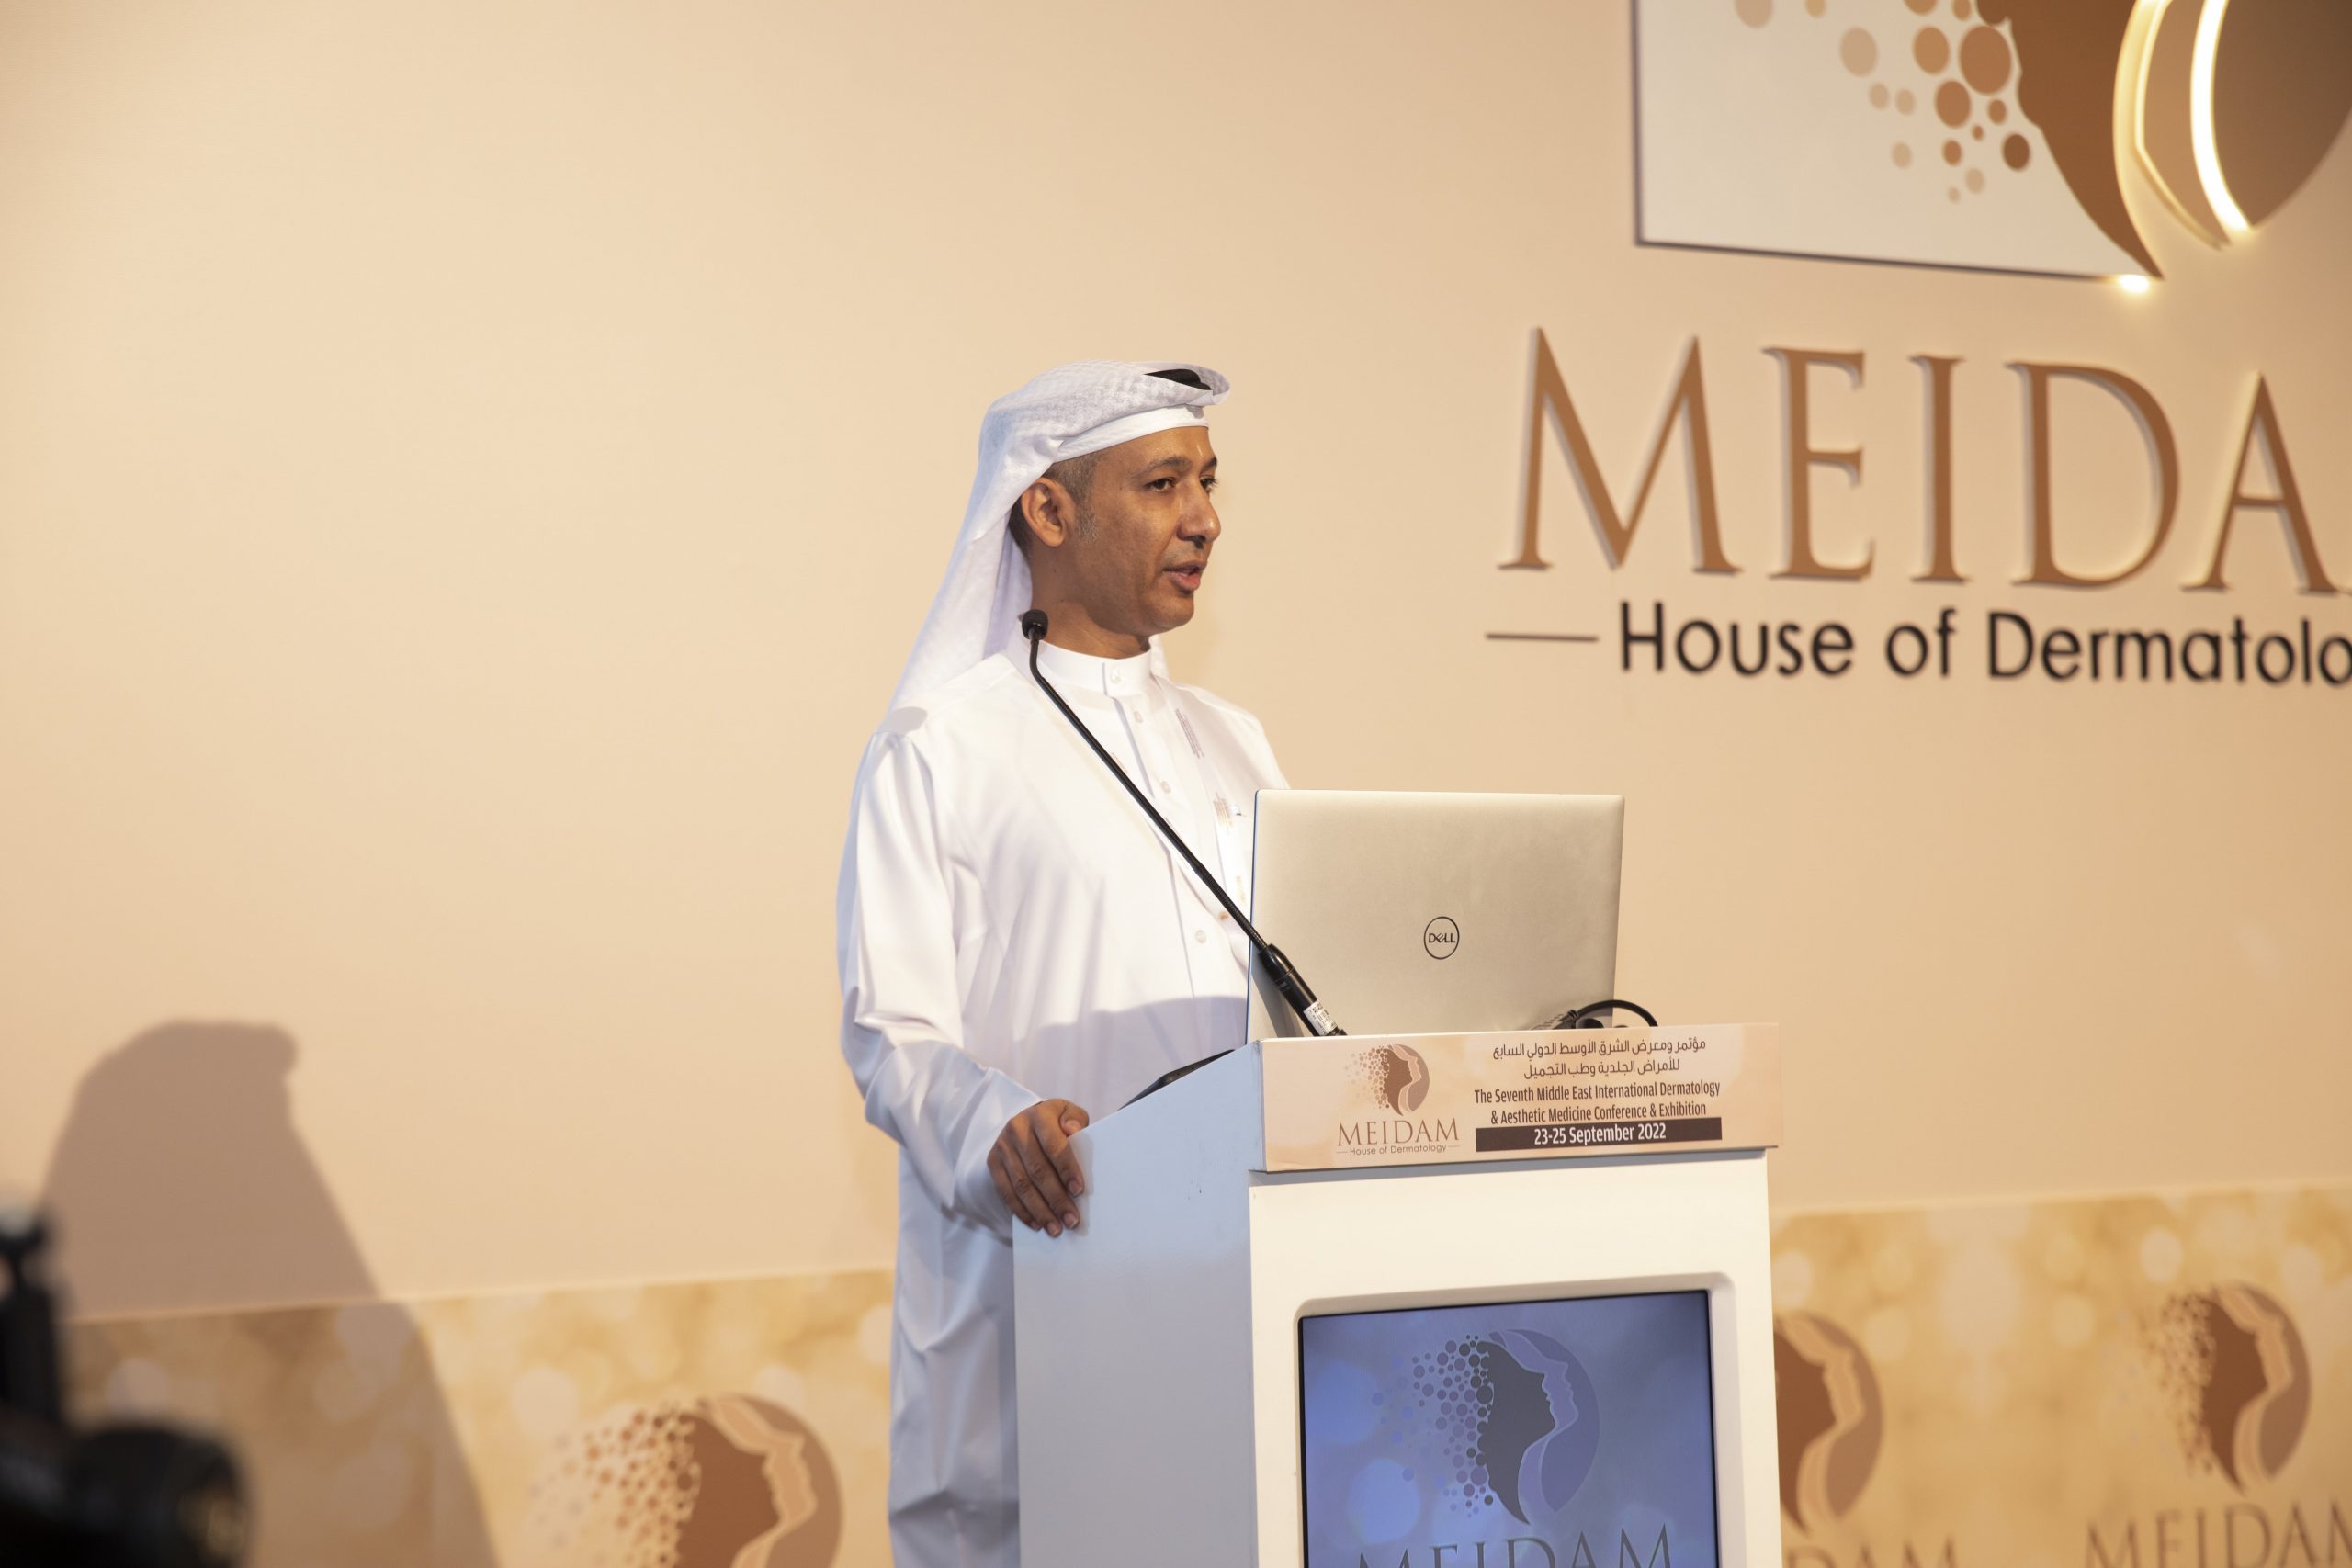 ثورة في عالم الأمراض الجلدية وطب التجميل في الشرق الأوسط بقيادة مؤتمر ميدام 2023